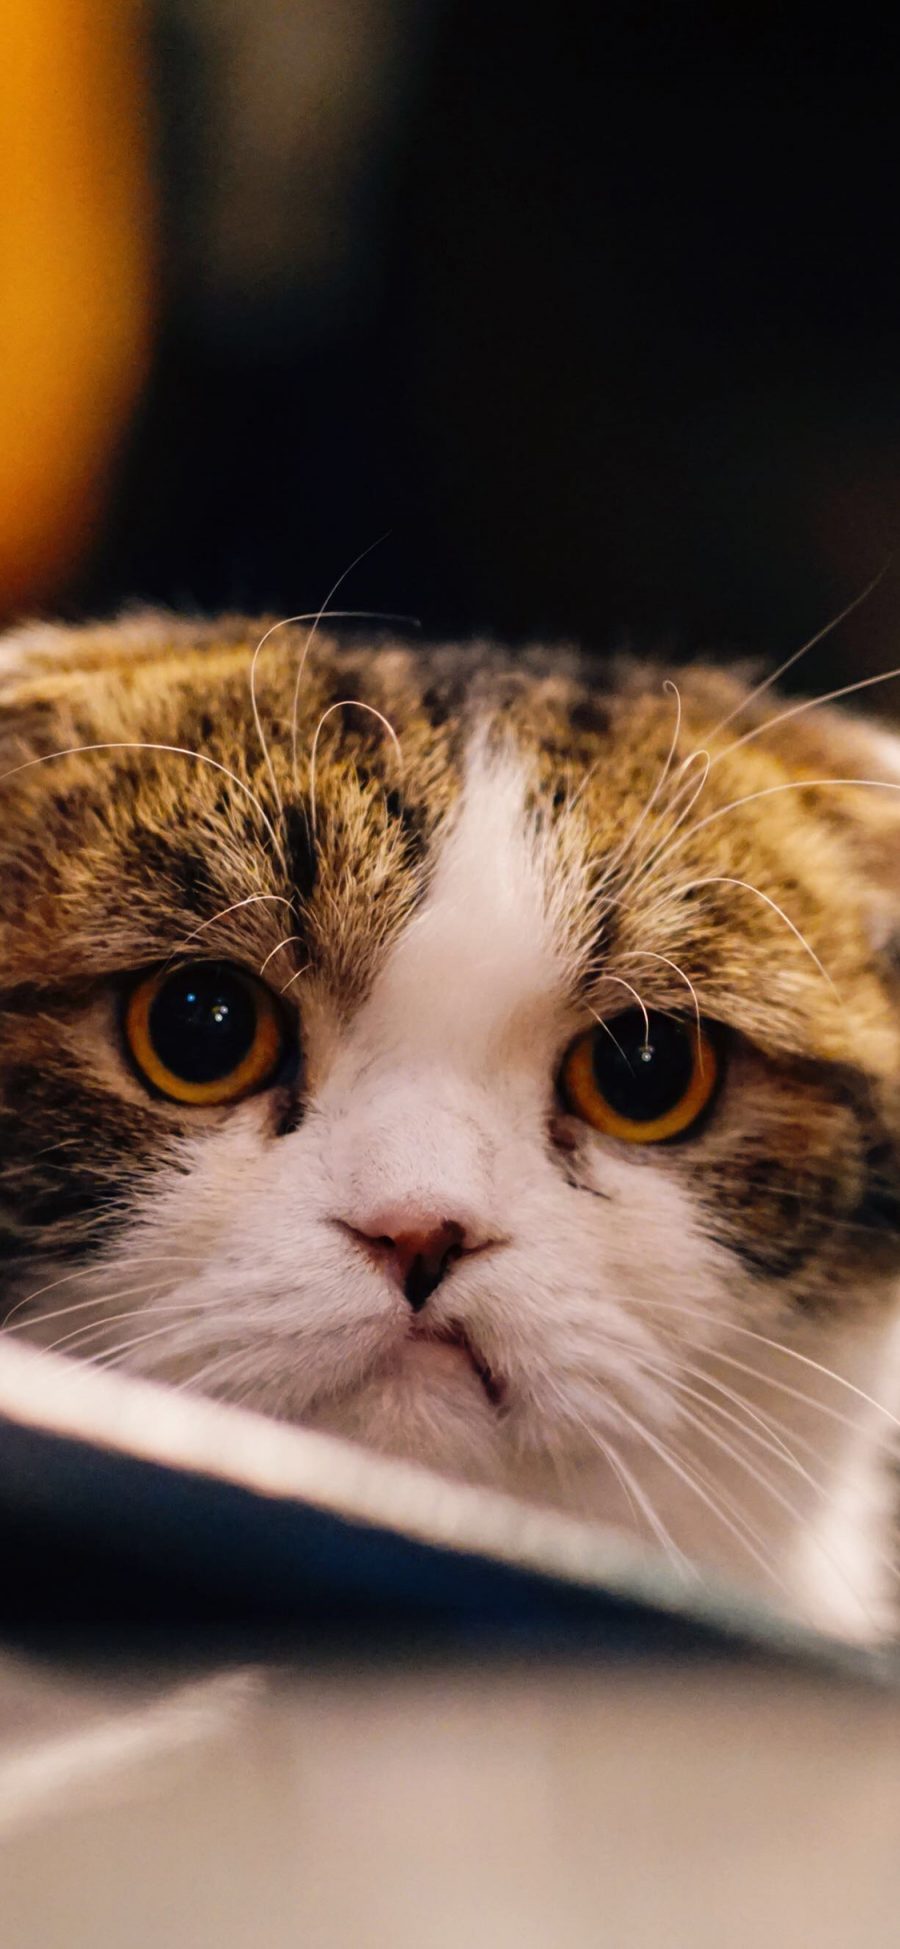 [2436×1125]猫咪 宠物 可爱 折耳猫 苹果手机壁纸图片